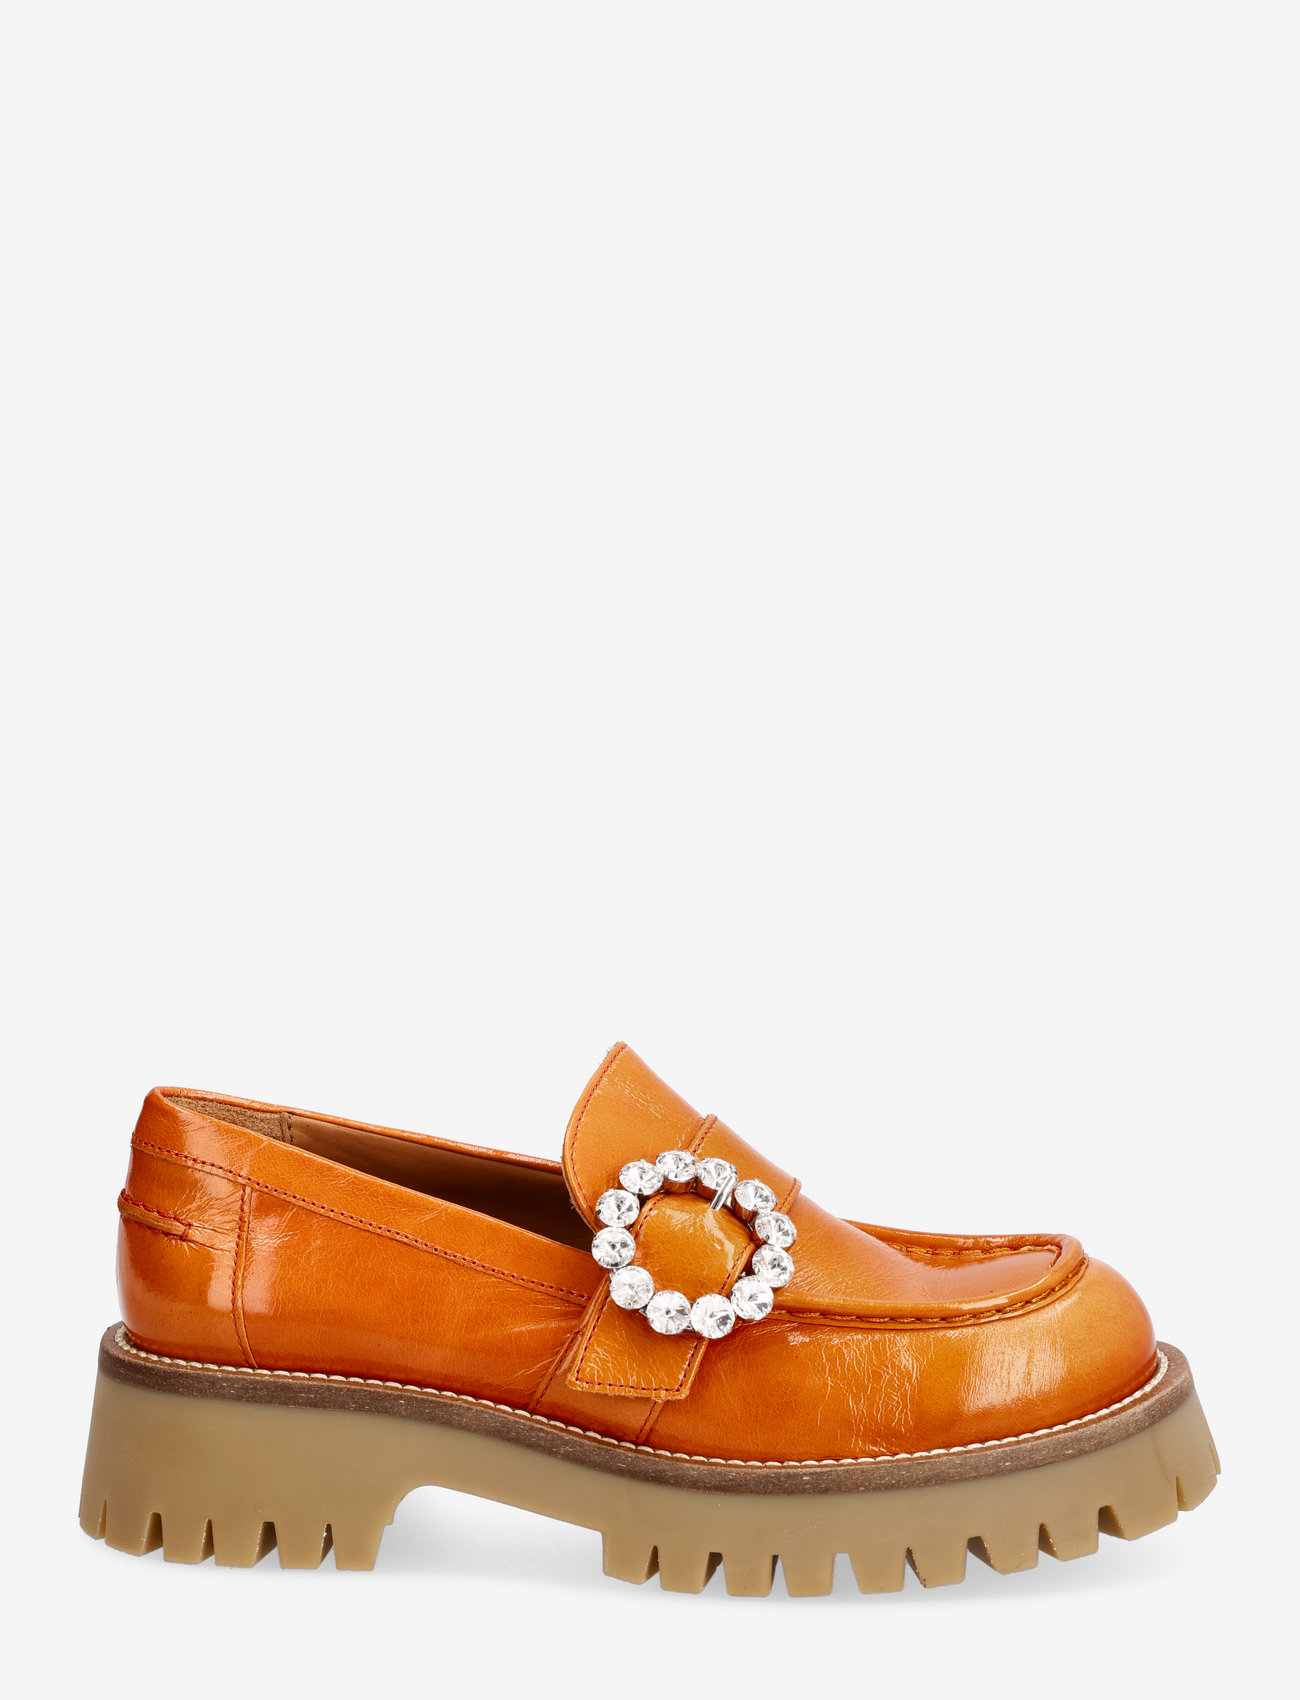 Billi Bi - Shoes - verjaardagscadeaus - orange naplack 227 - 1